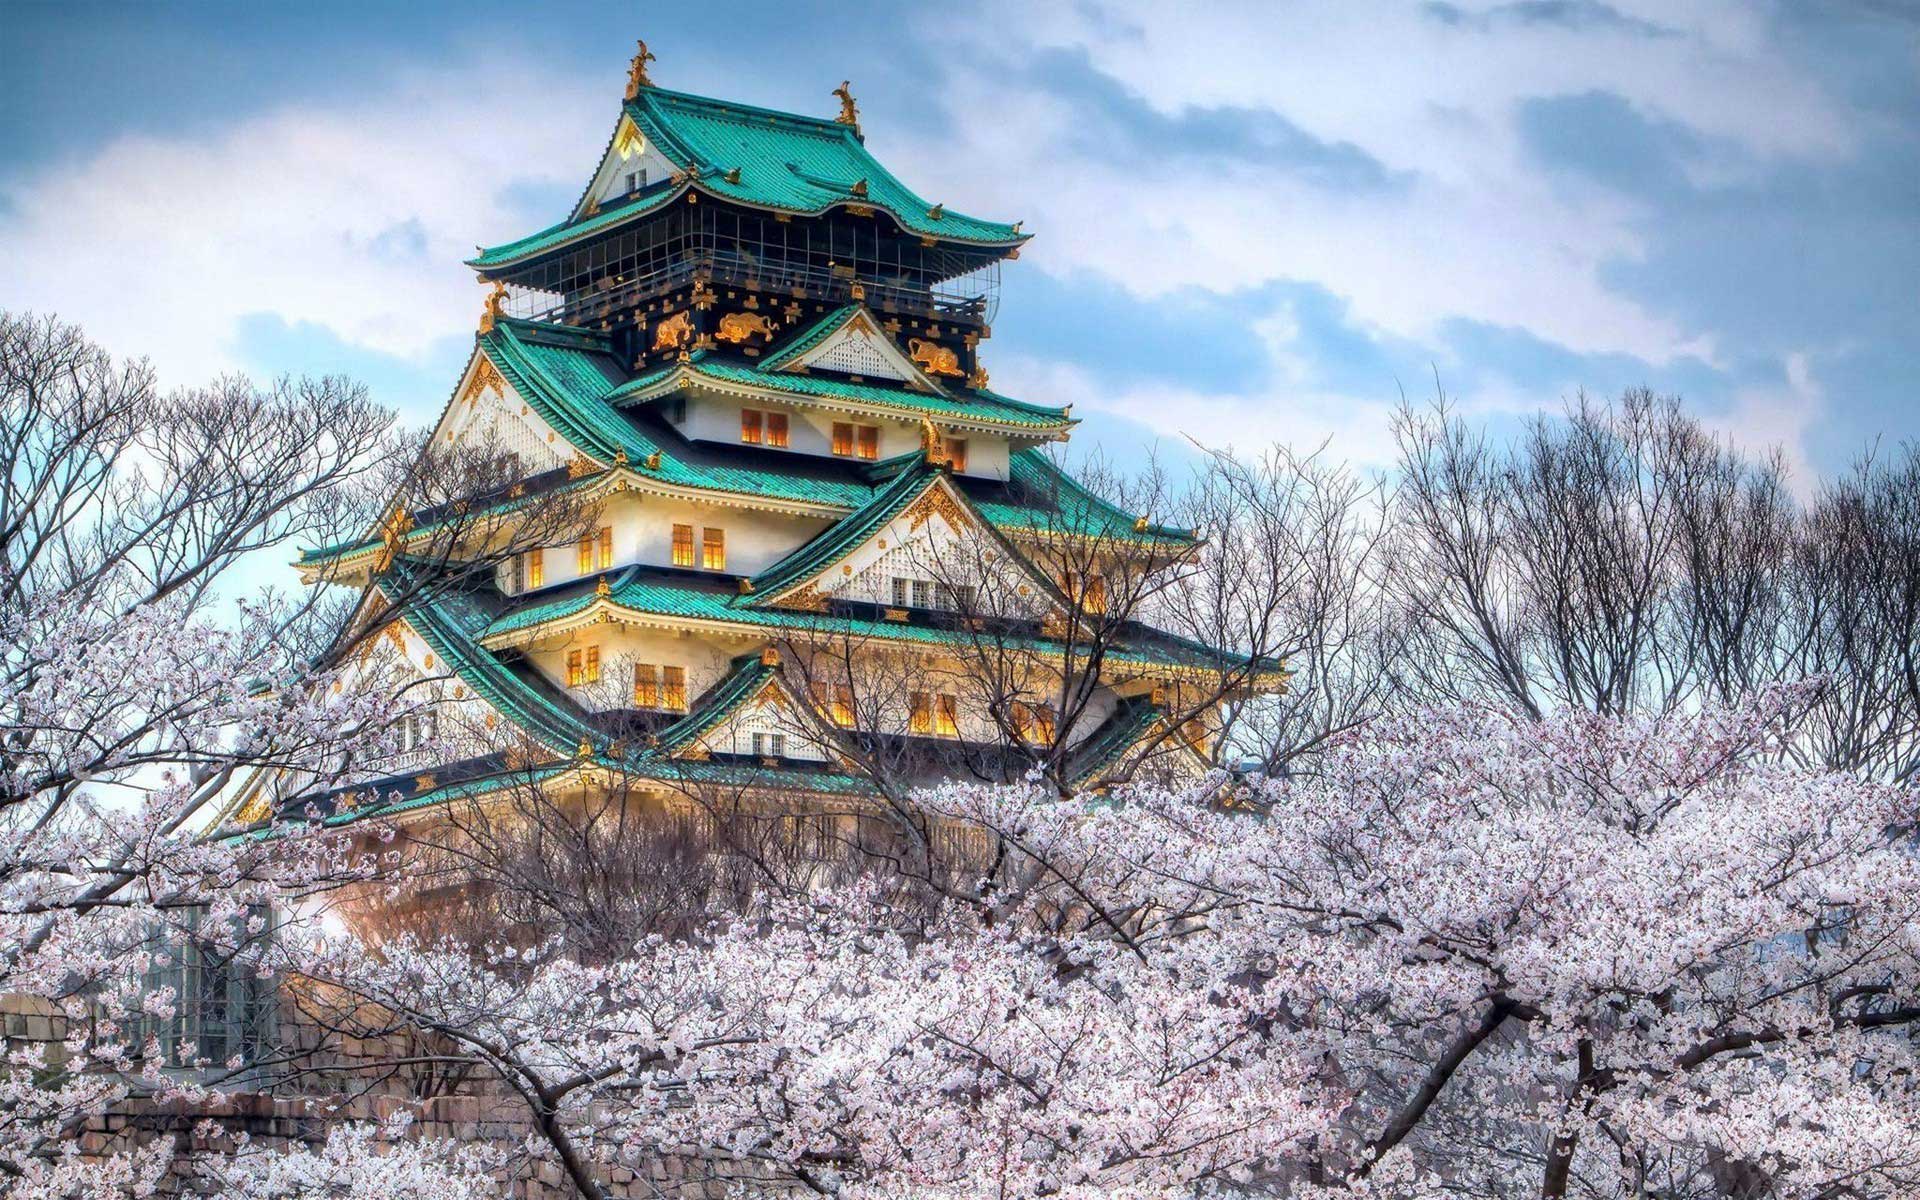 Популярные заставки и фоны Осакский Замок на компьютер